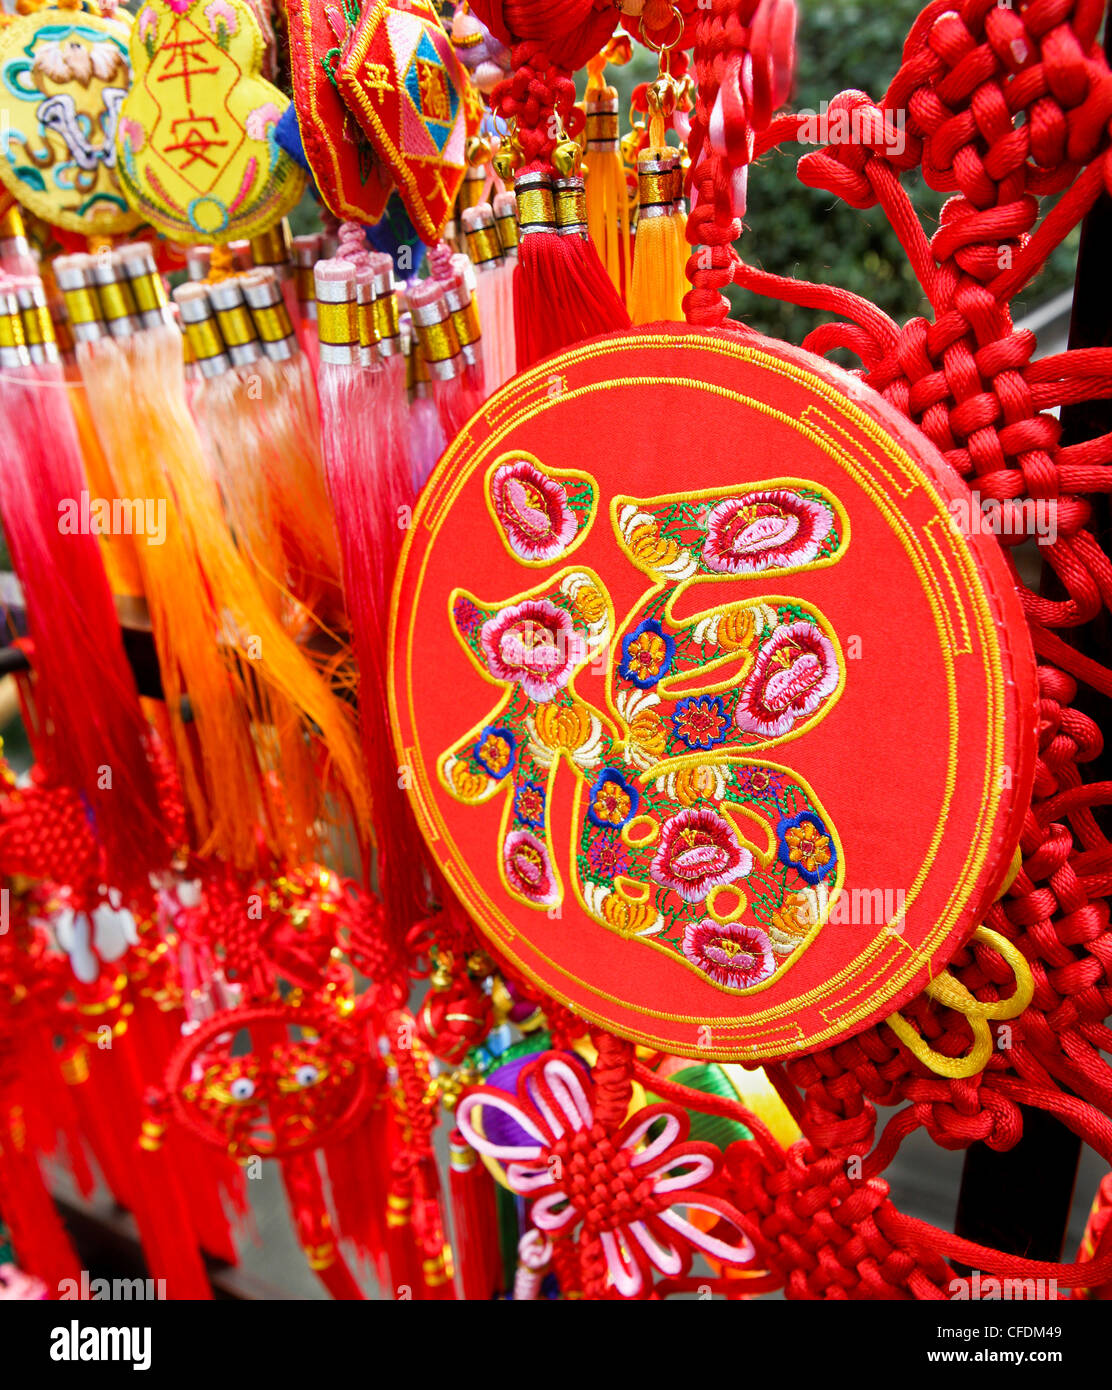 Günstige chinesische Wort Fu (Glück) gestickt auf ein Chinese New Year ornamentalen Souvenir, Chongqing, Sichuan, China, Asien Stockfoto